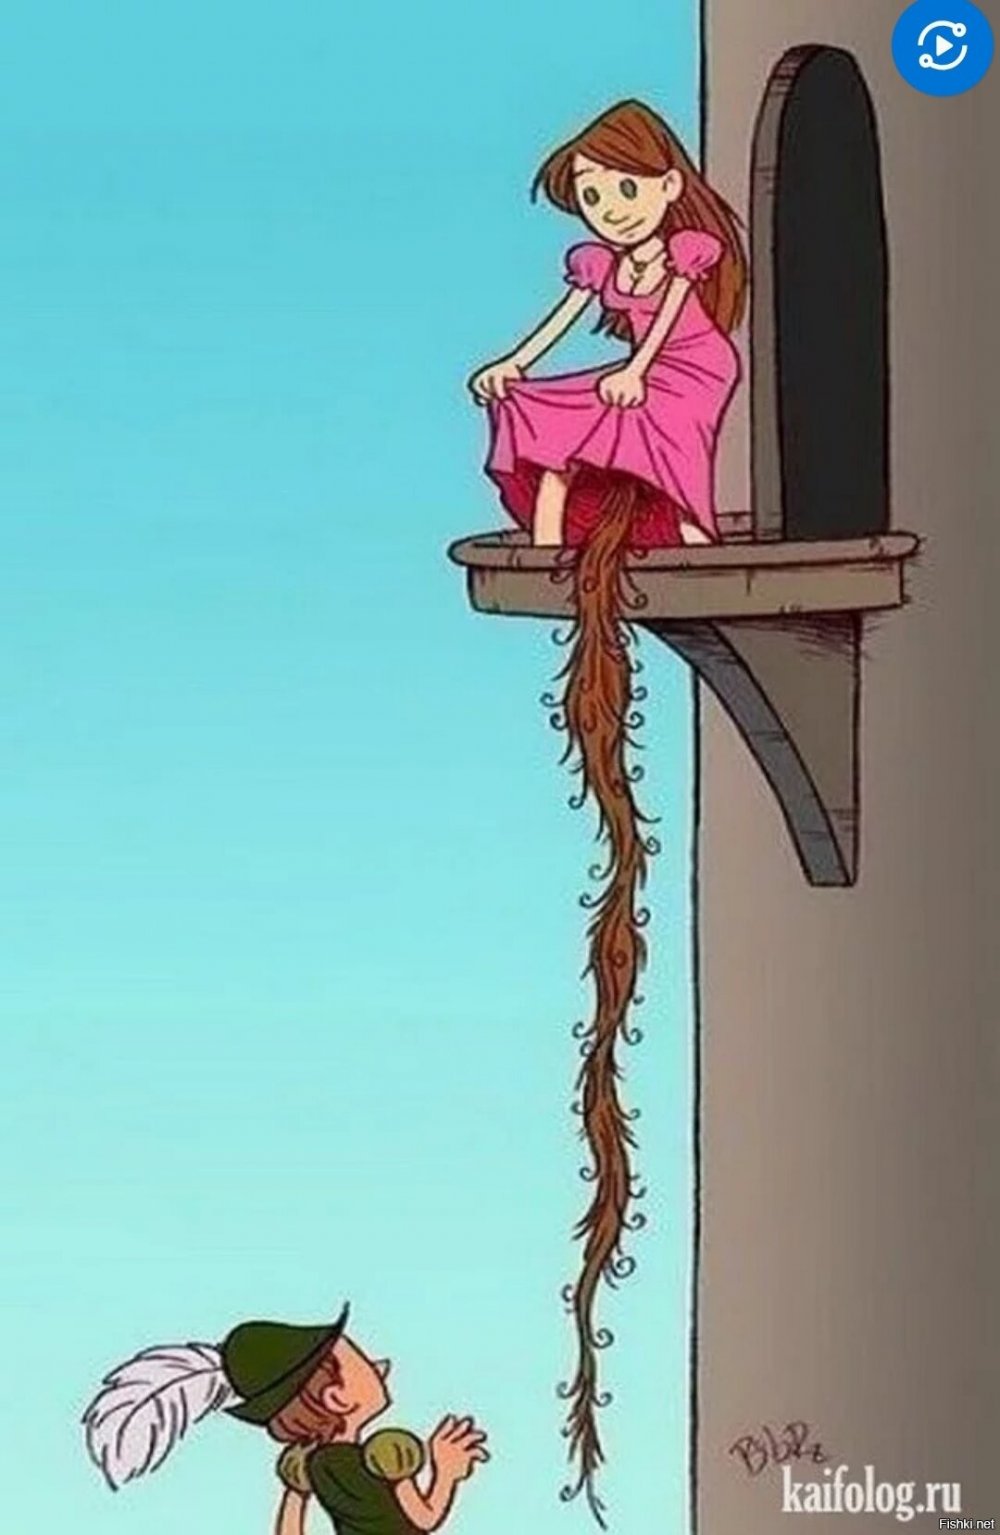 Принцесса в башне с длинными волосами